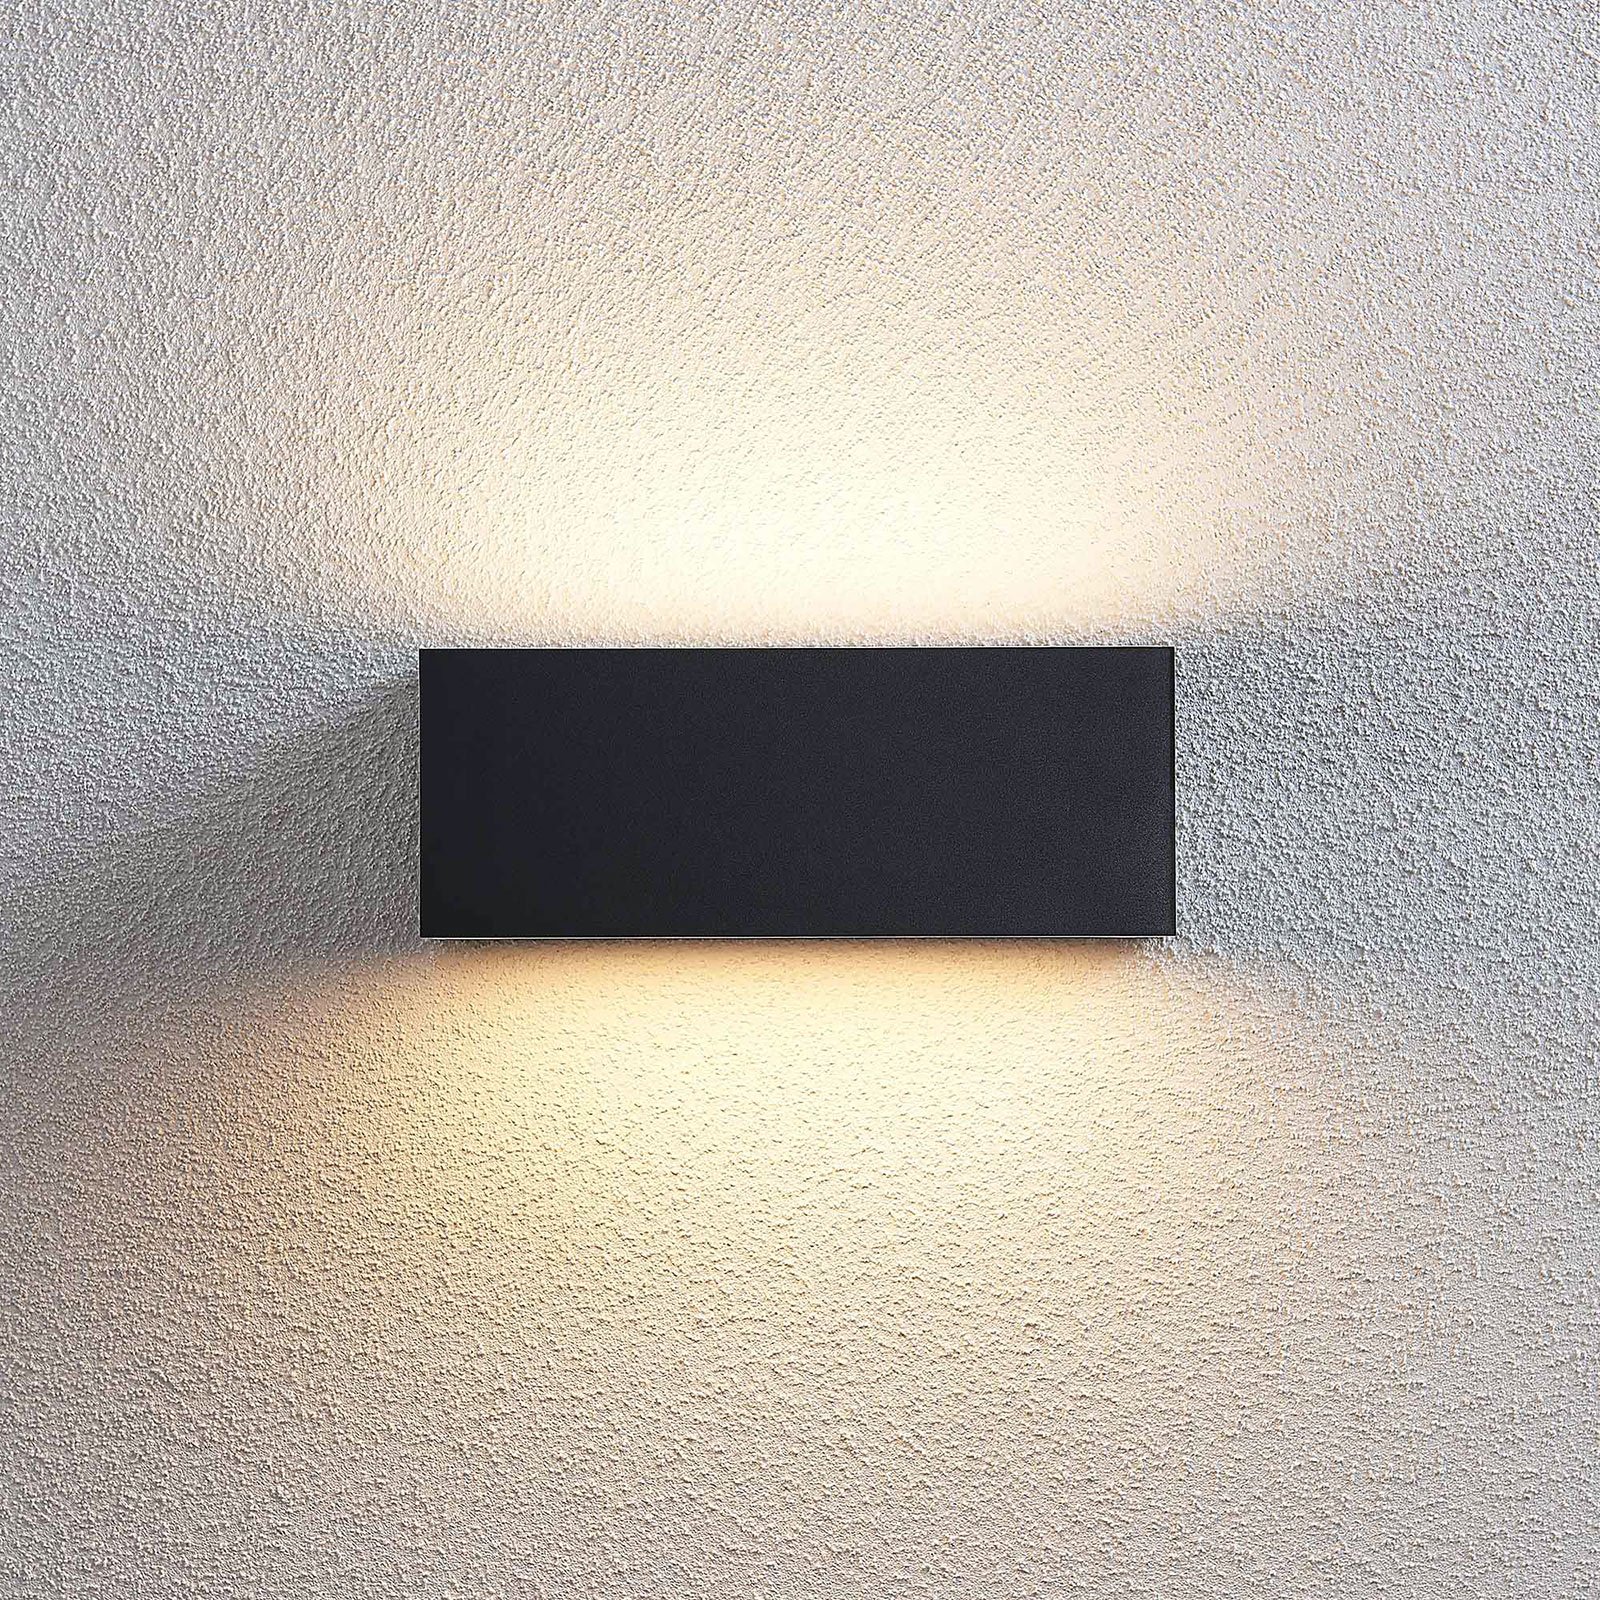 LED venkovní nástěnné svítidlo Nienke, IP65, 23 cm